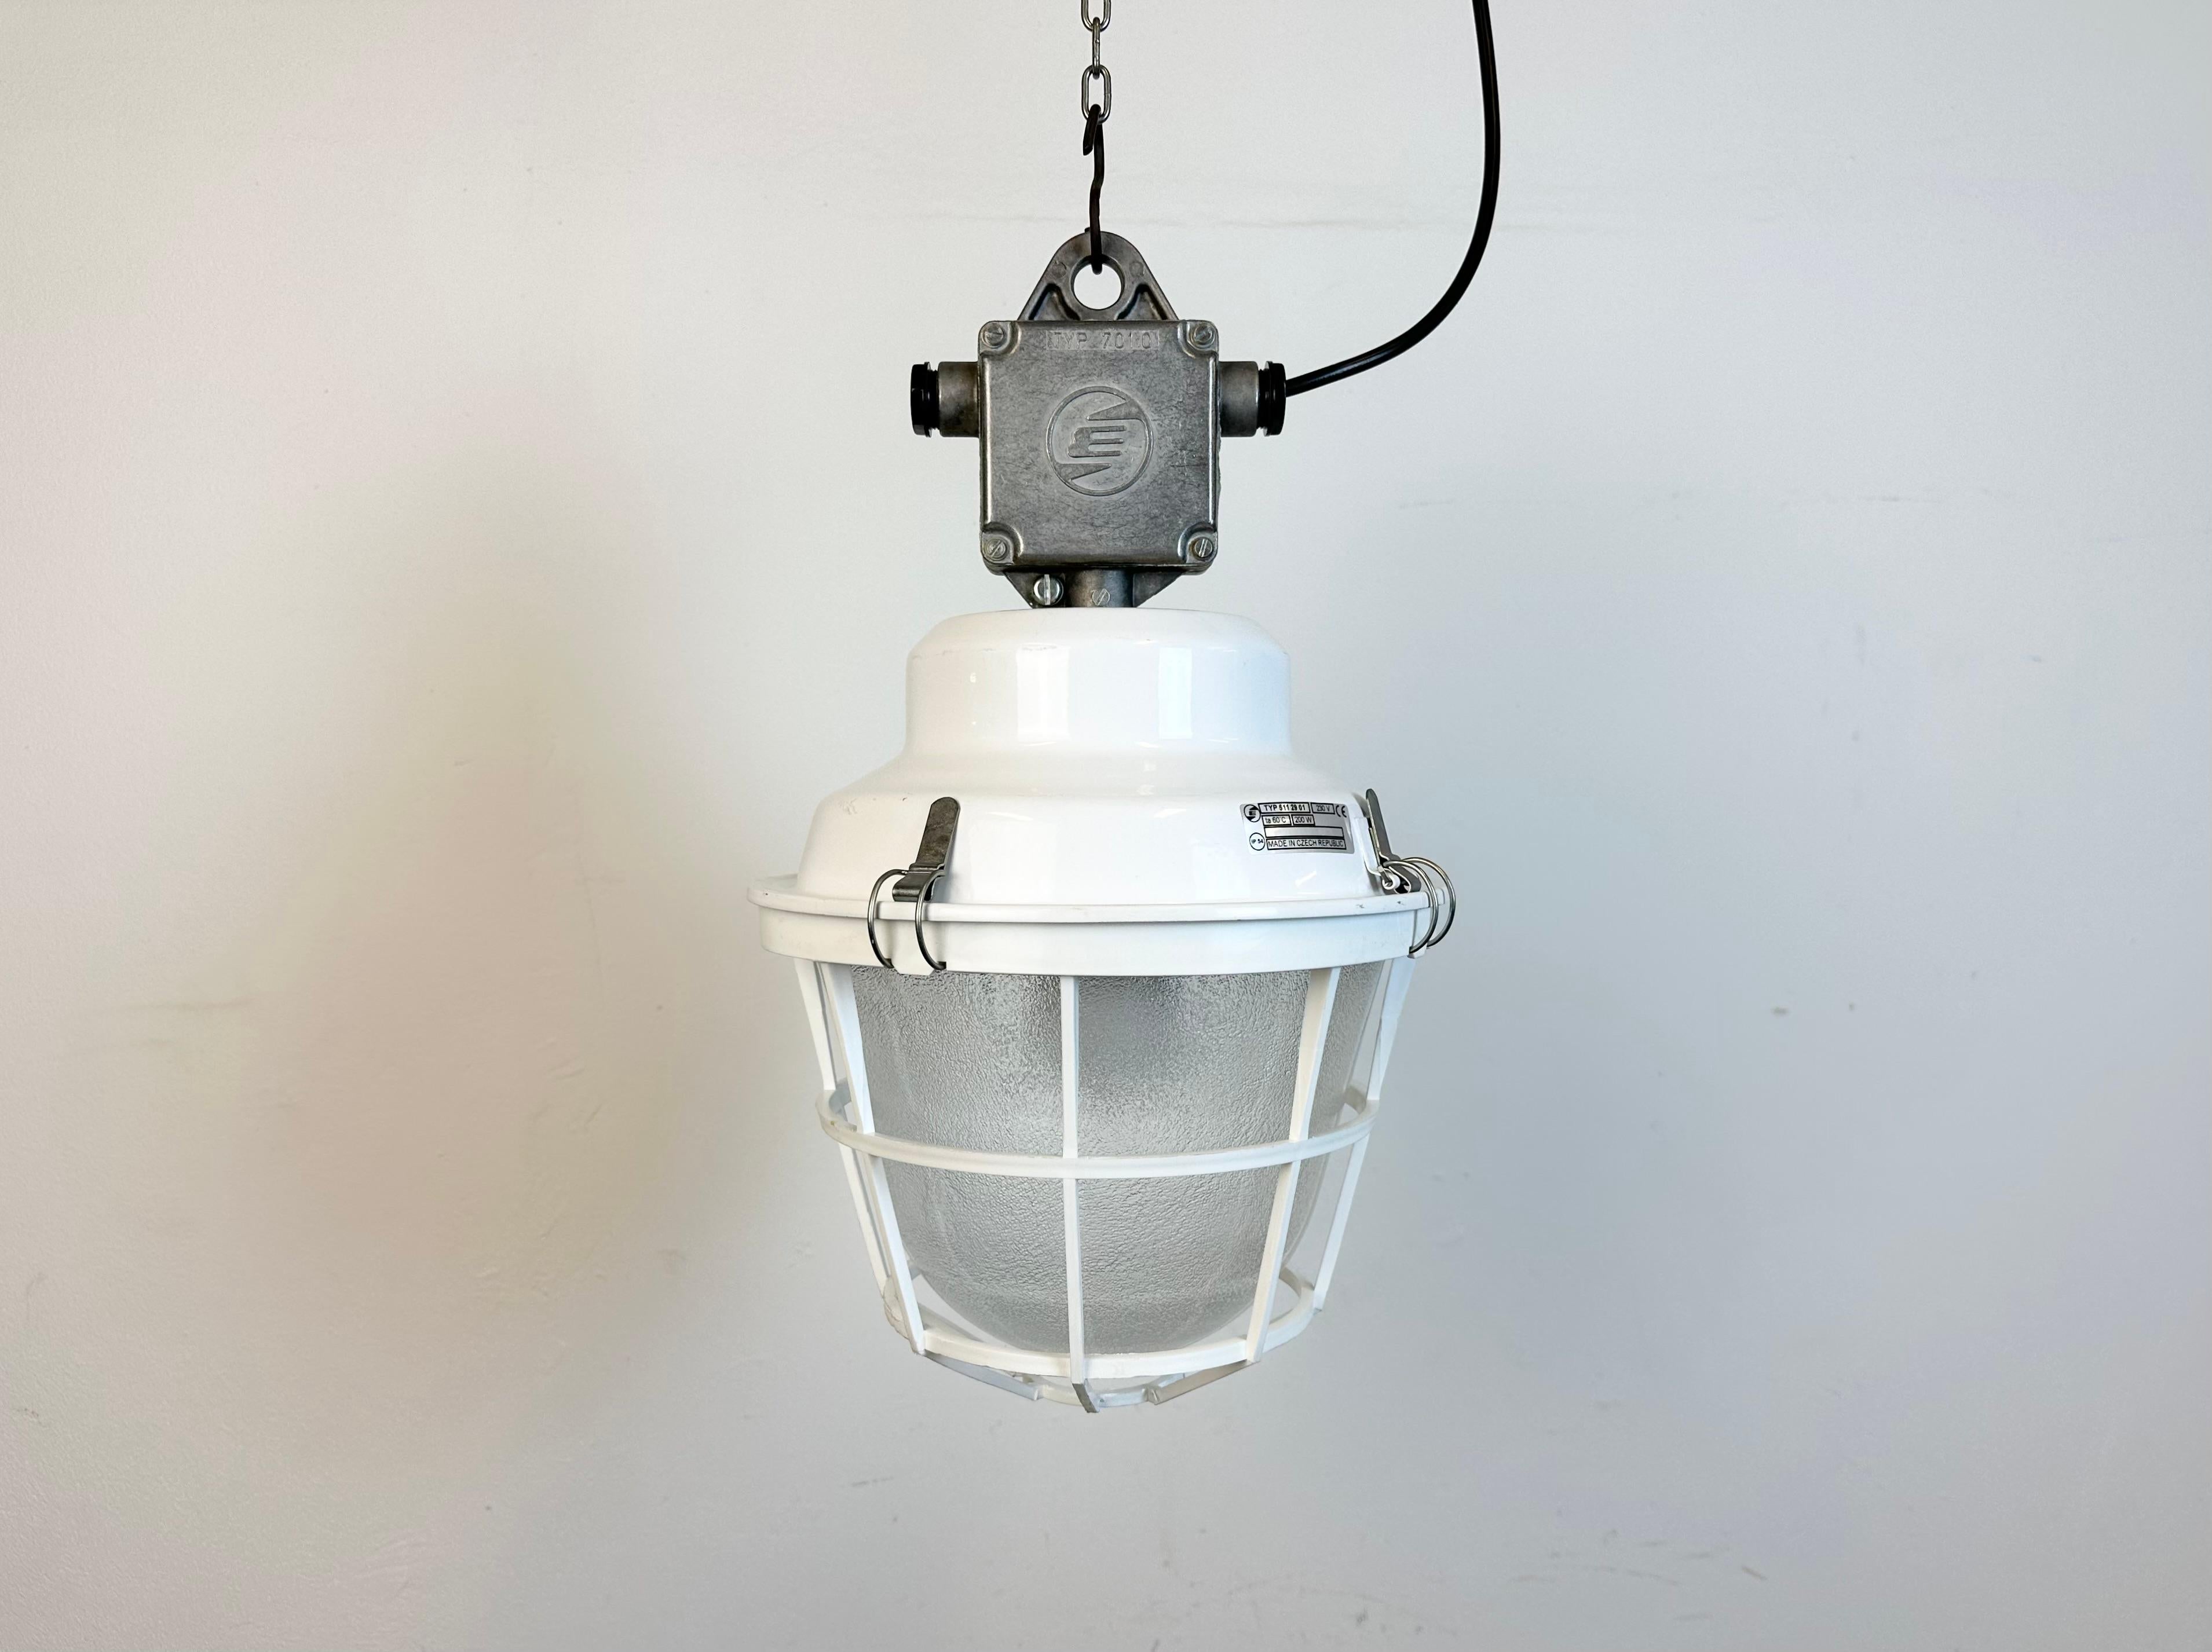 Lampe industrielle fabriquée par Elektrosvit en République tchèque dans les années 1990. Il est doté d'un plateau en fer blanc avec un caisson en fonte d'aluminium, d'un verre dépoli et d'une grille de protection en plastique blanc.
La douille en